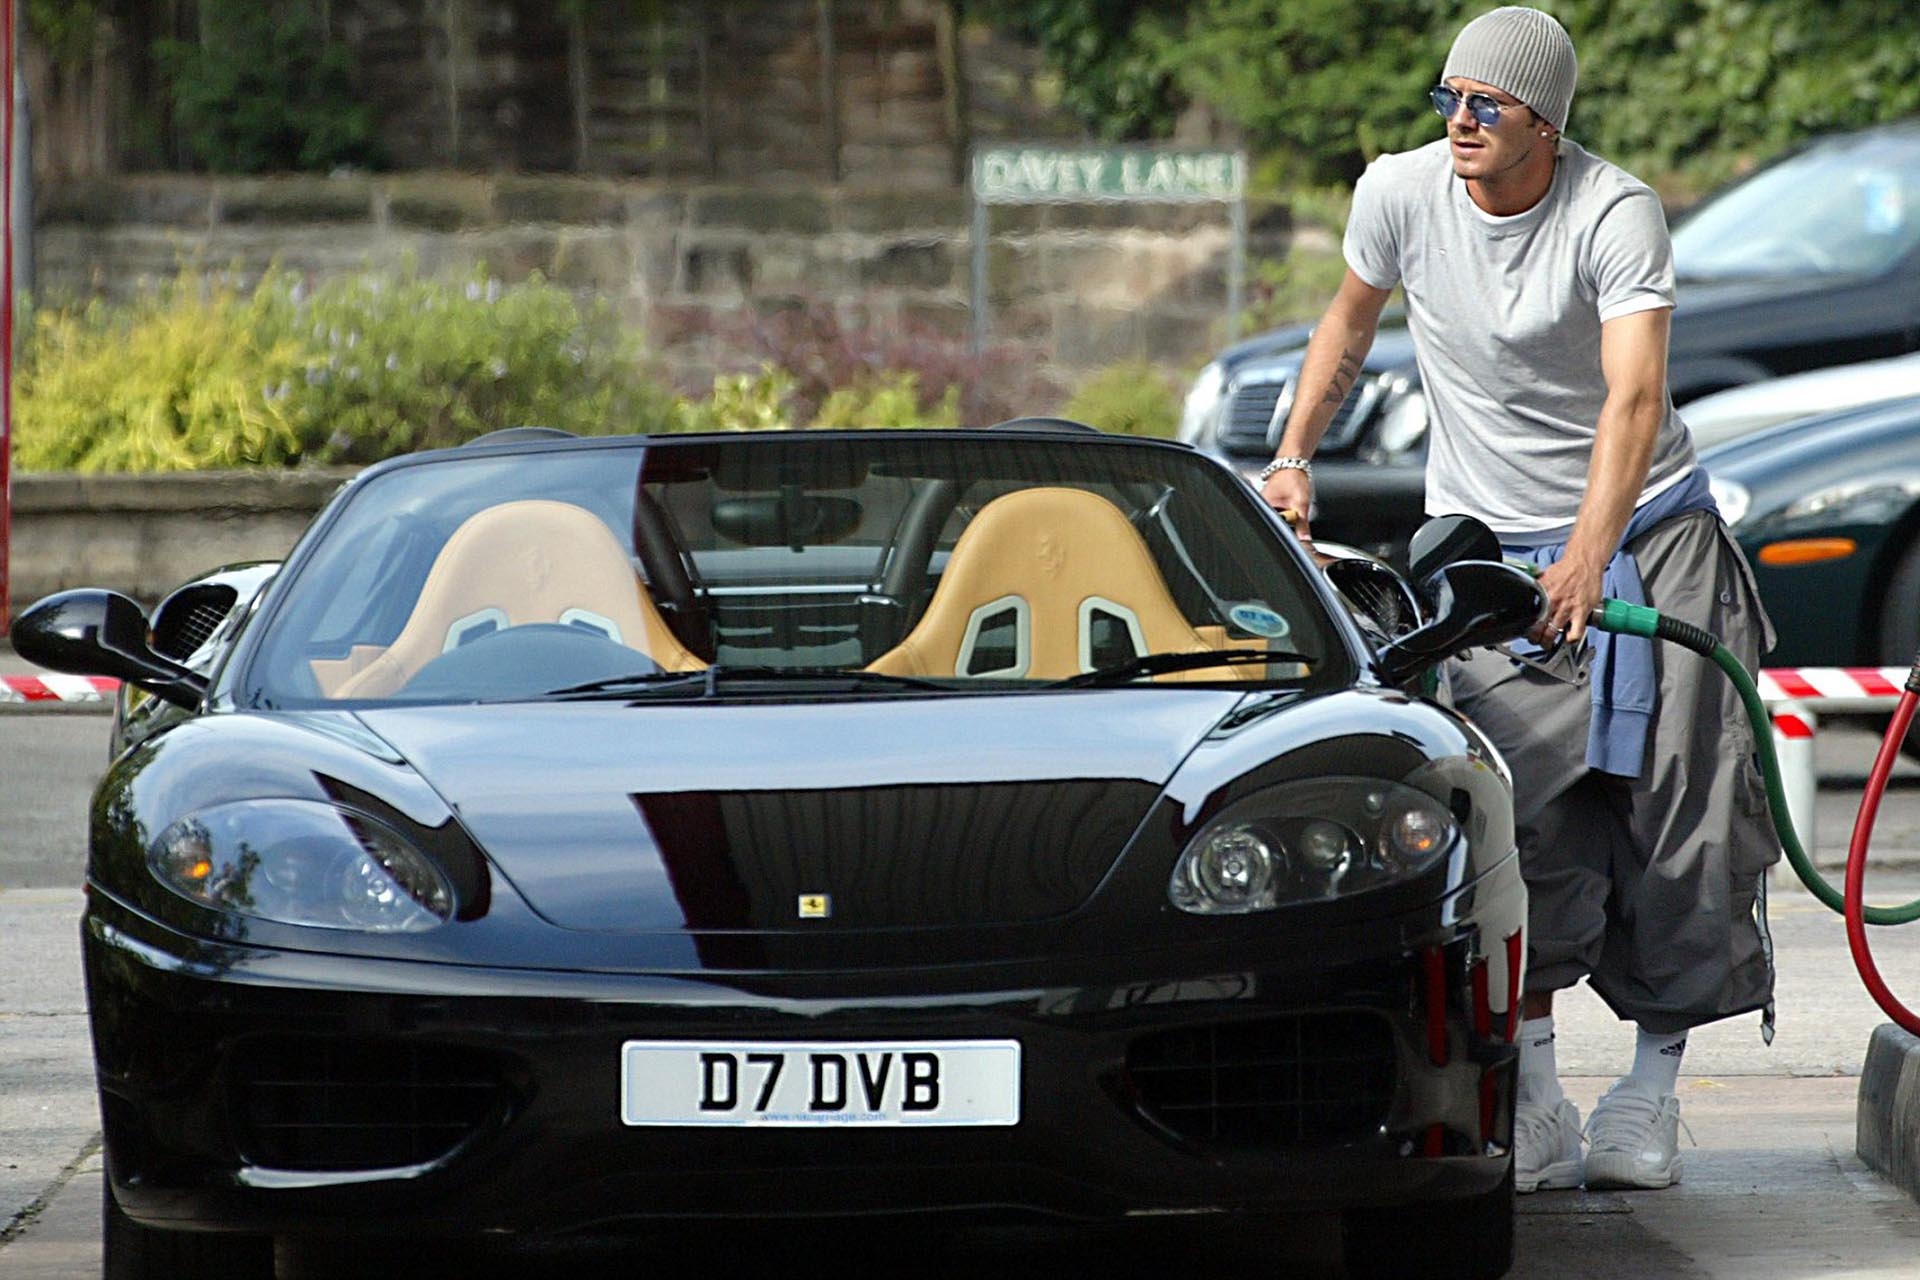 Chi tiết siêu xe Ferrari 360 Spider của David Beckham - ảnh 1